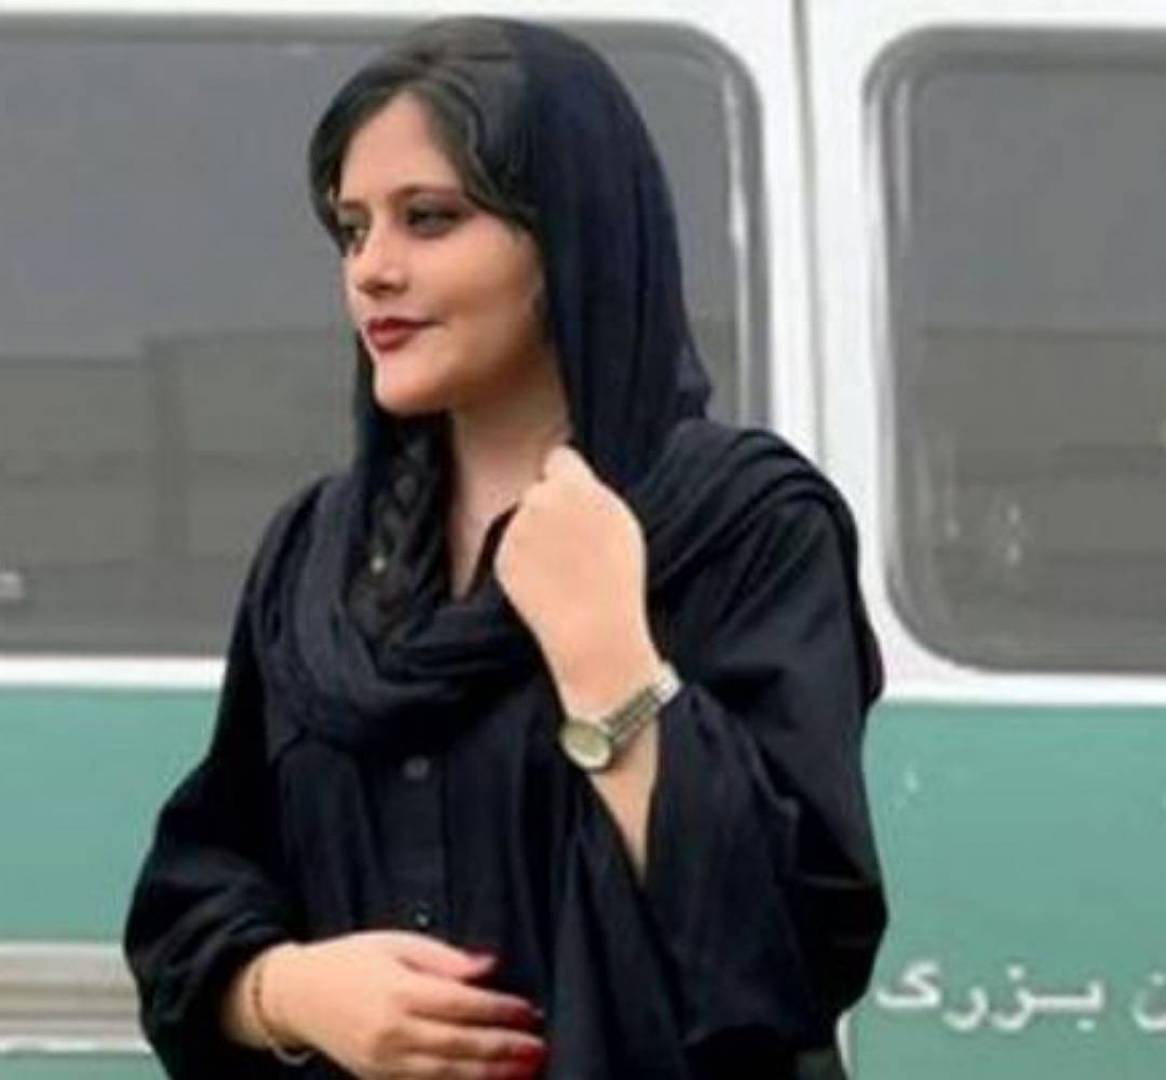 الرئيس الايراني يعلق على وفاة الشابة مهسا أميني...ماذا قال